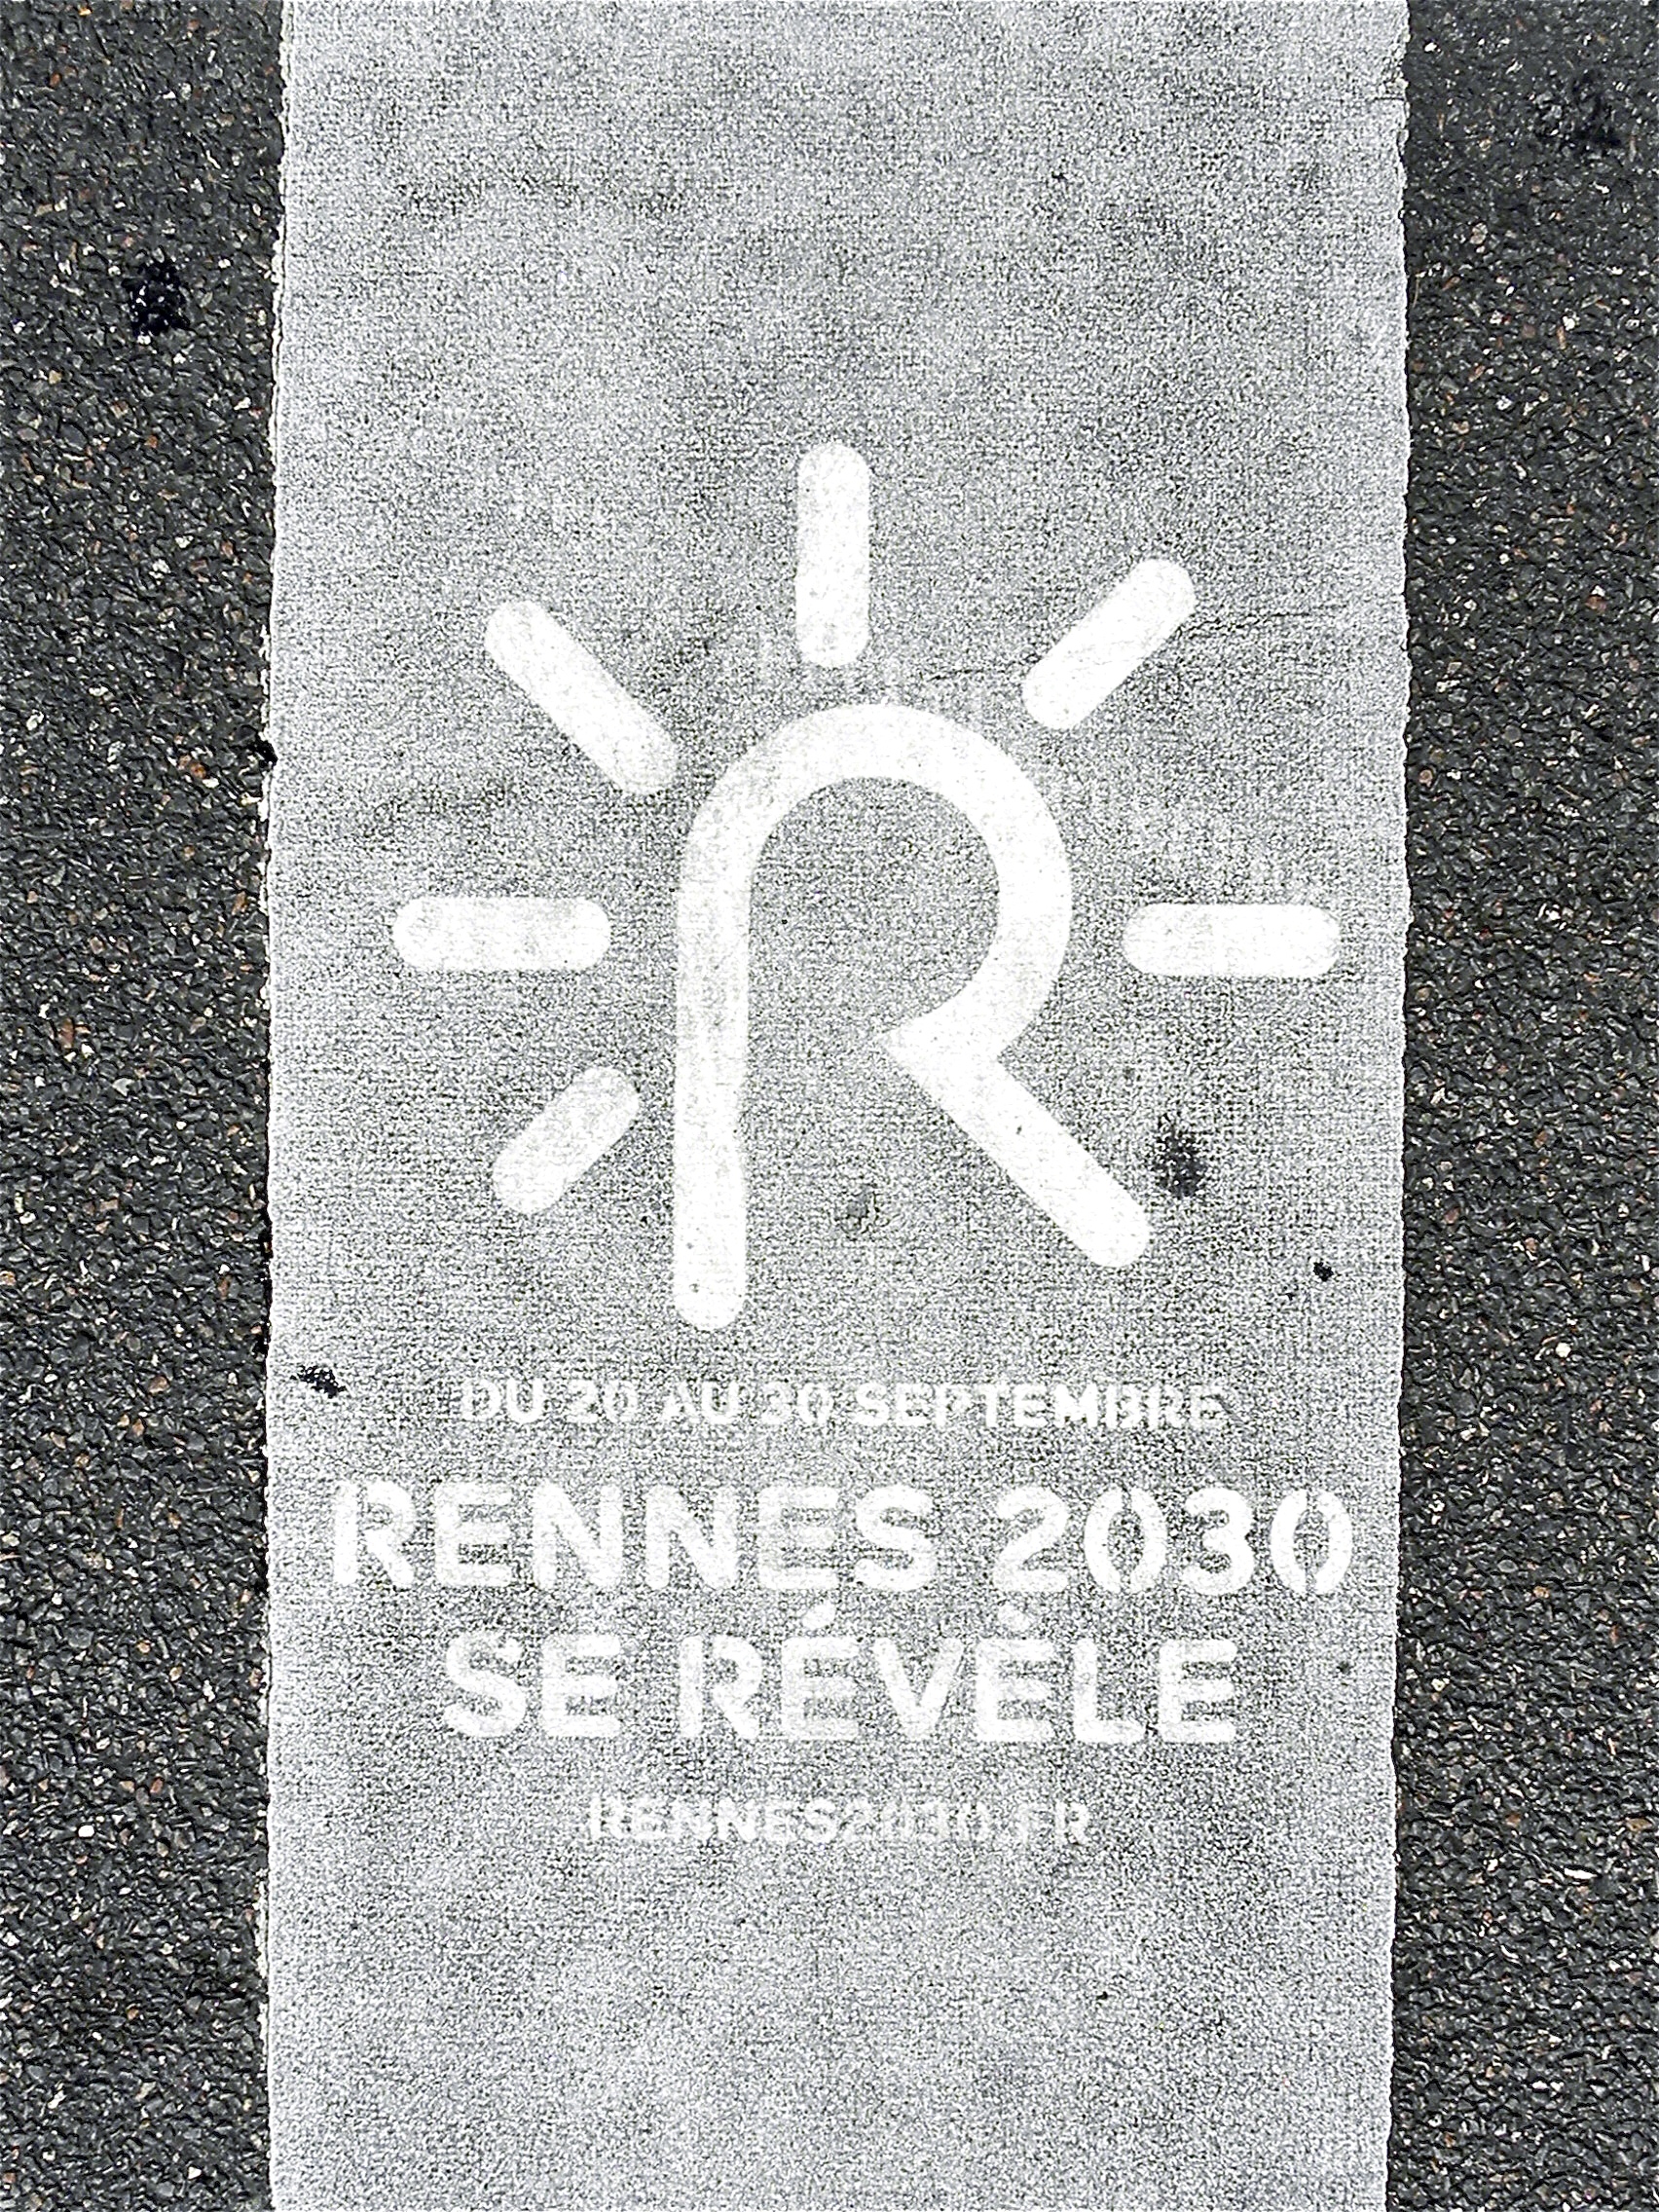 VILLE DE RENNES – RENNES 2030